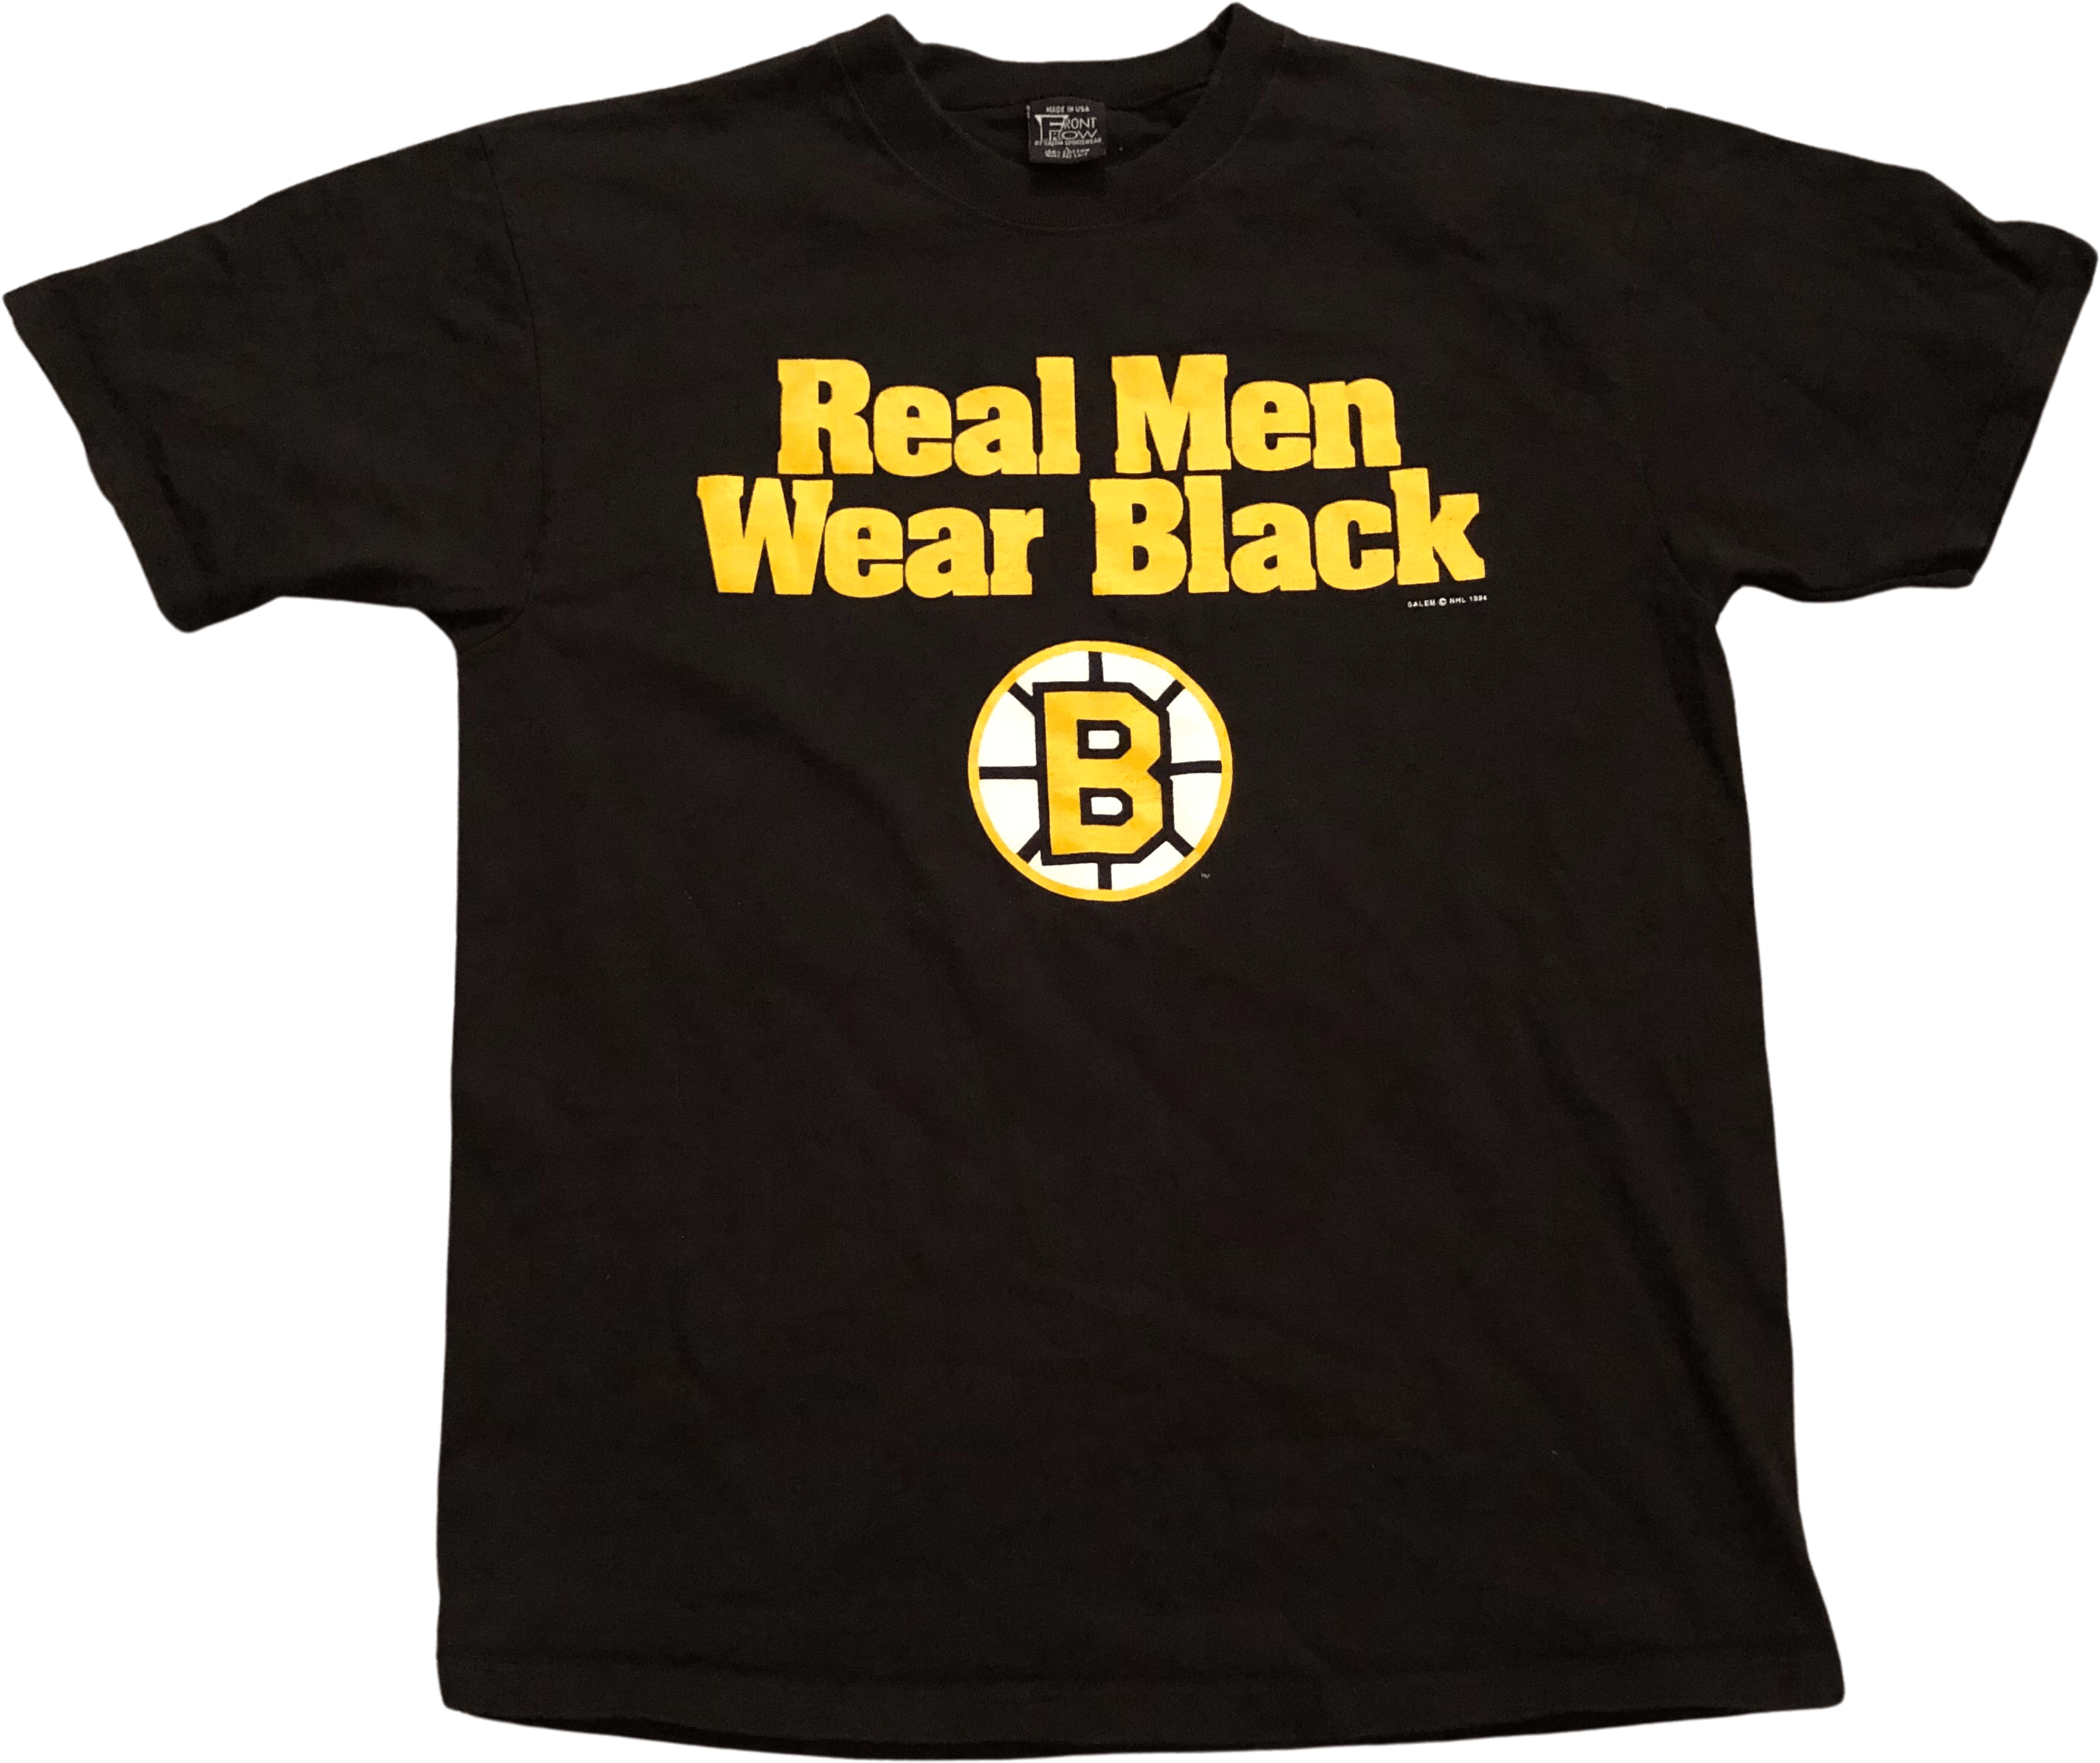 Salem Sportswear Men's T-Shirt - Black - L